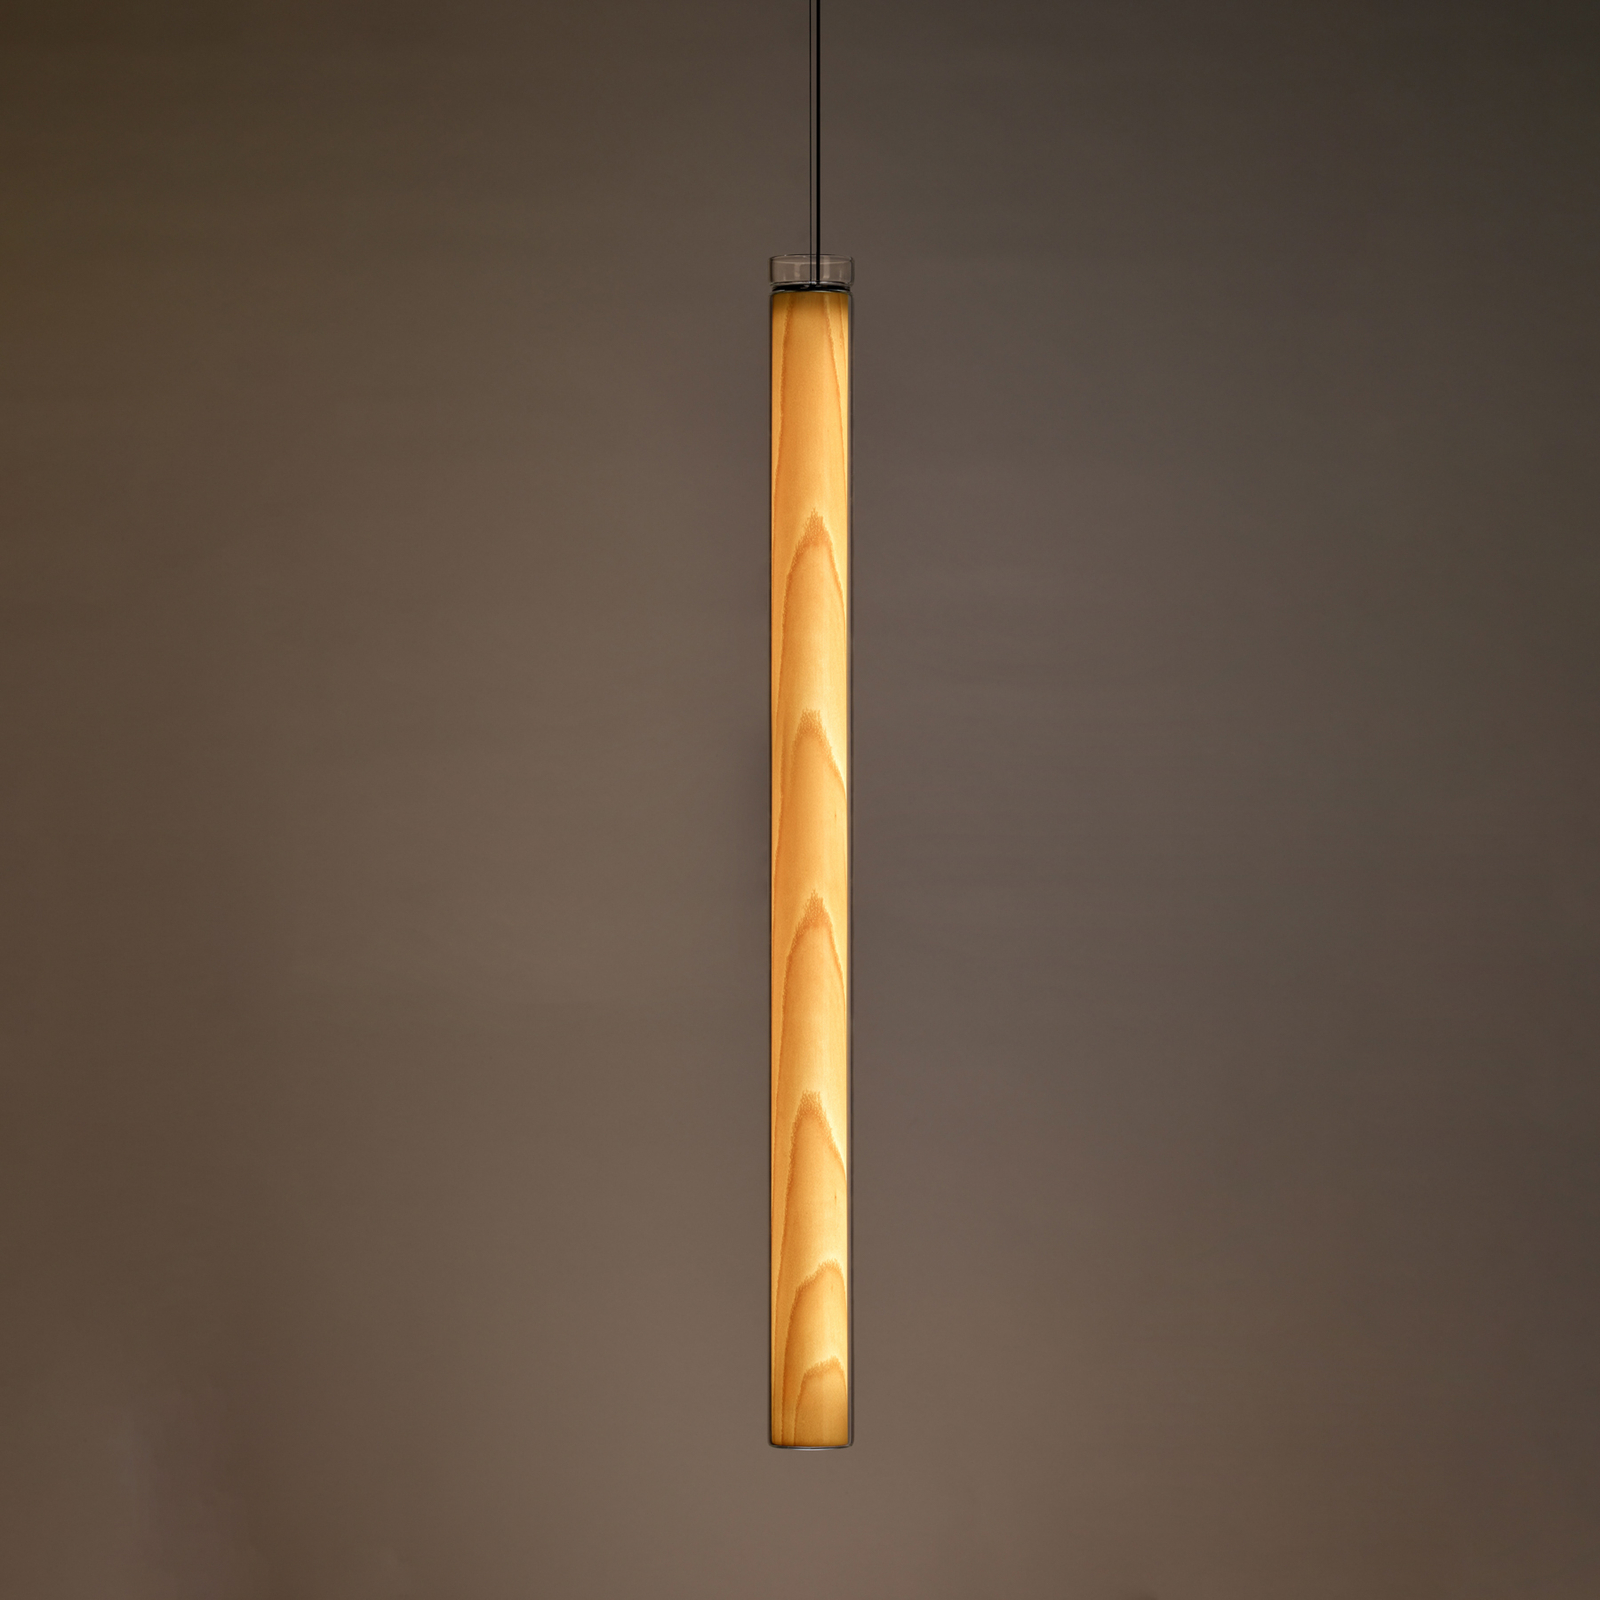 LZF Estela SV LED-Pendellampe, 90 cm, buche natur